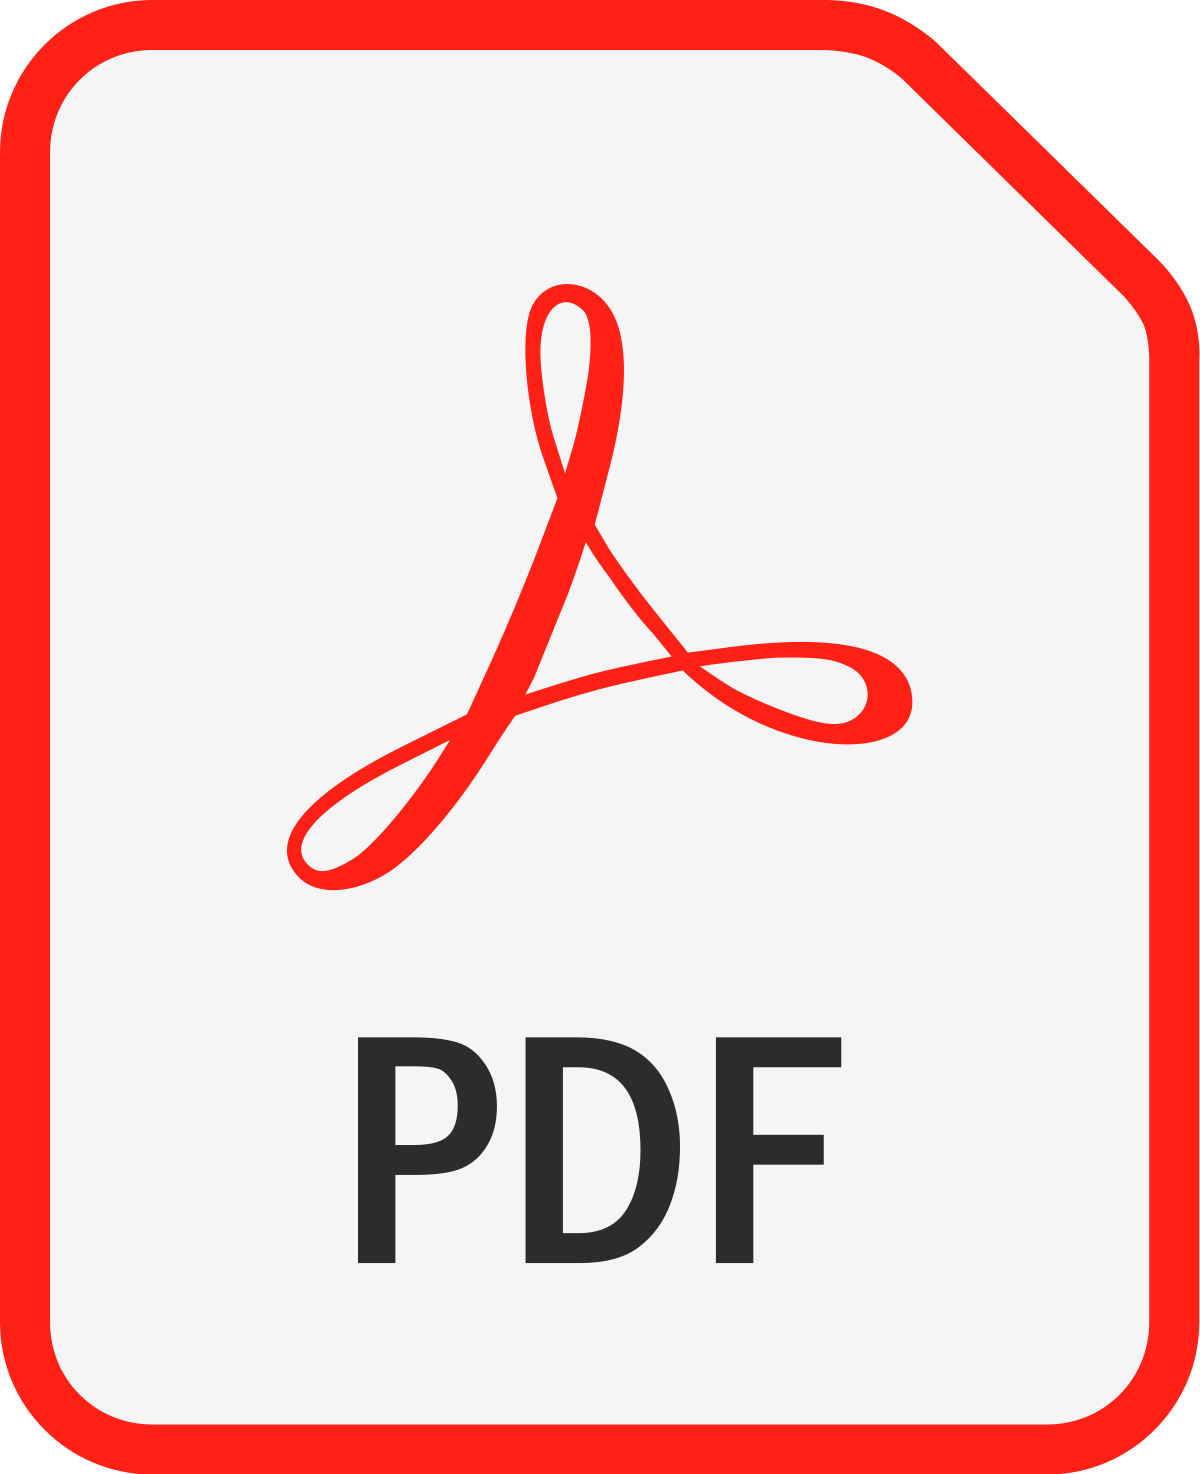 logo pdf odnośnik do dokumentu w pdf